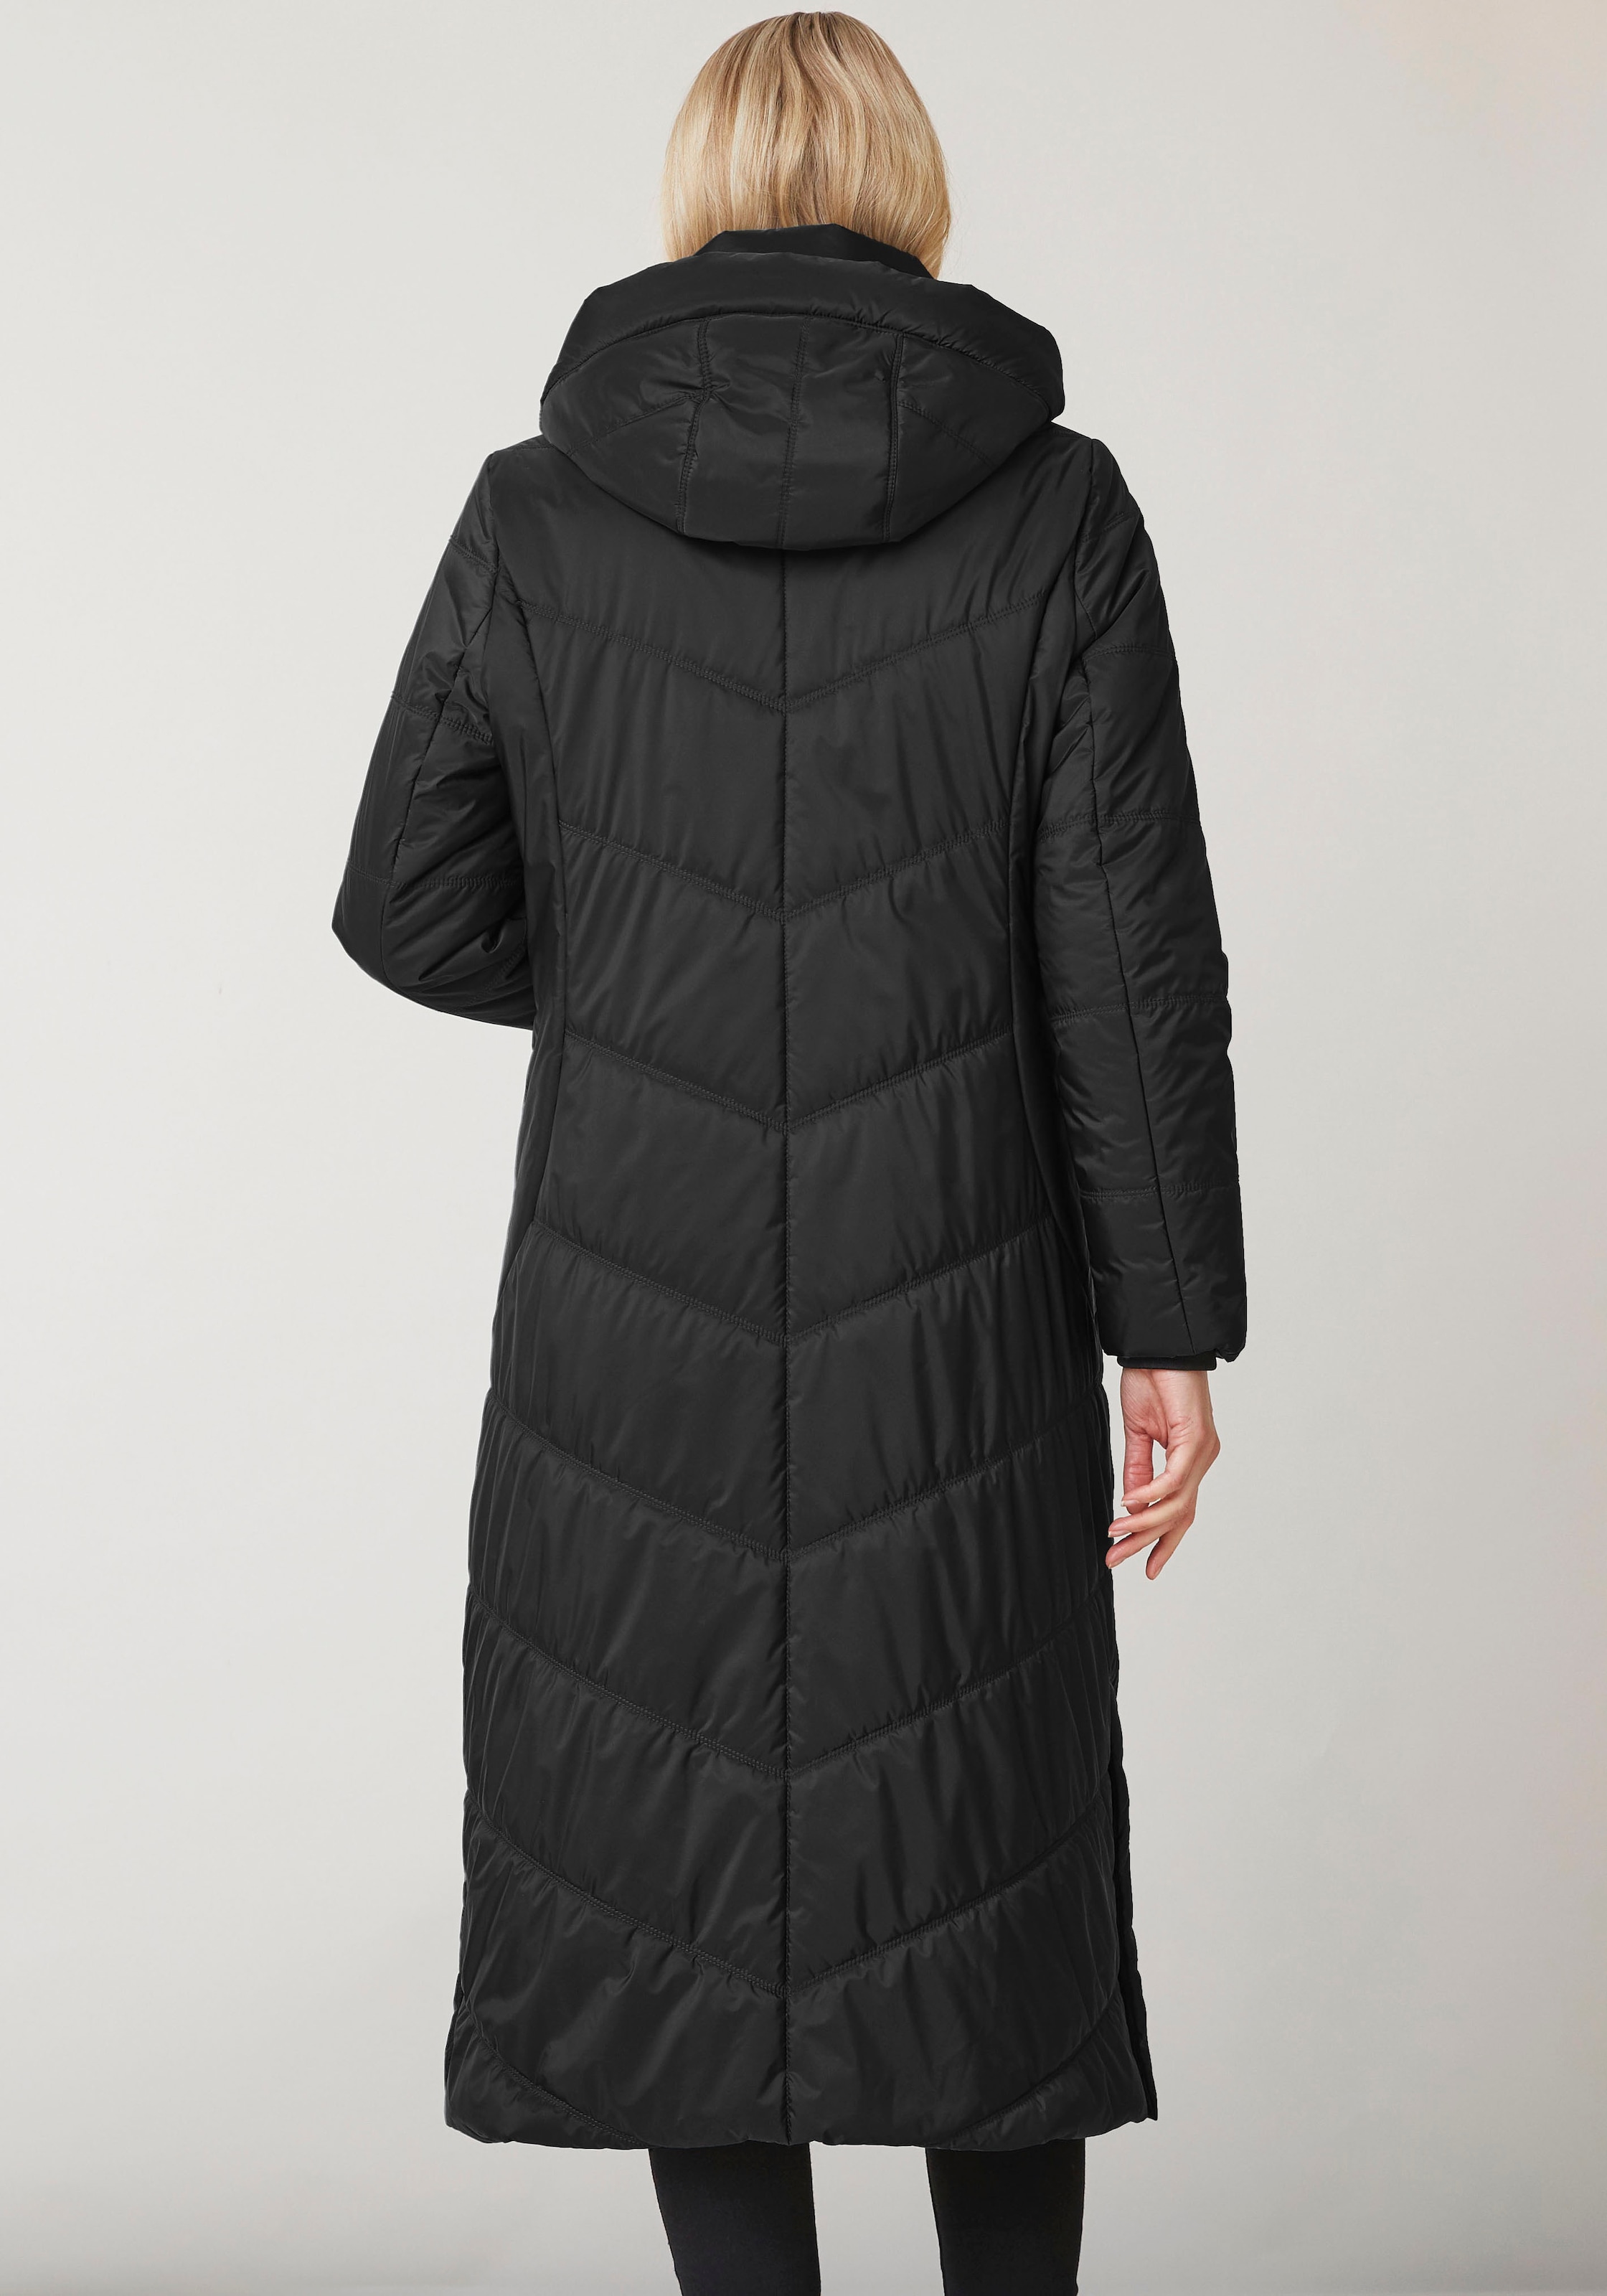 Junge Danmark Winterjacke »Ina«, mit Kapuze, mit seitlichen  Reißverschlusstaschen online kaufen | I'm walking